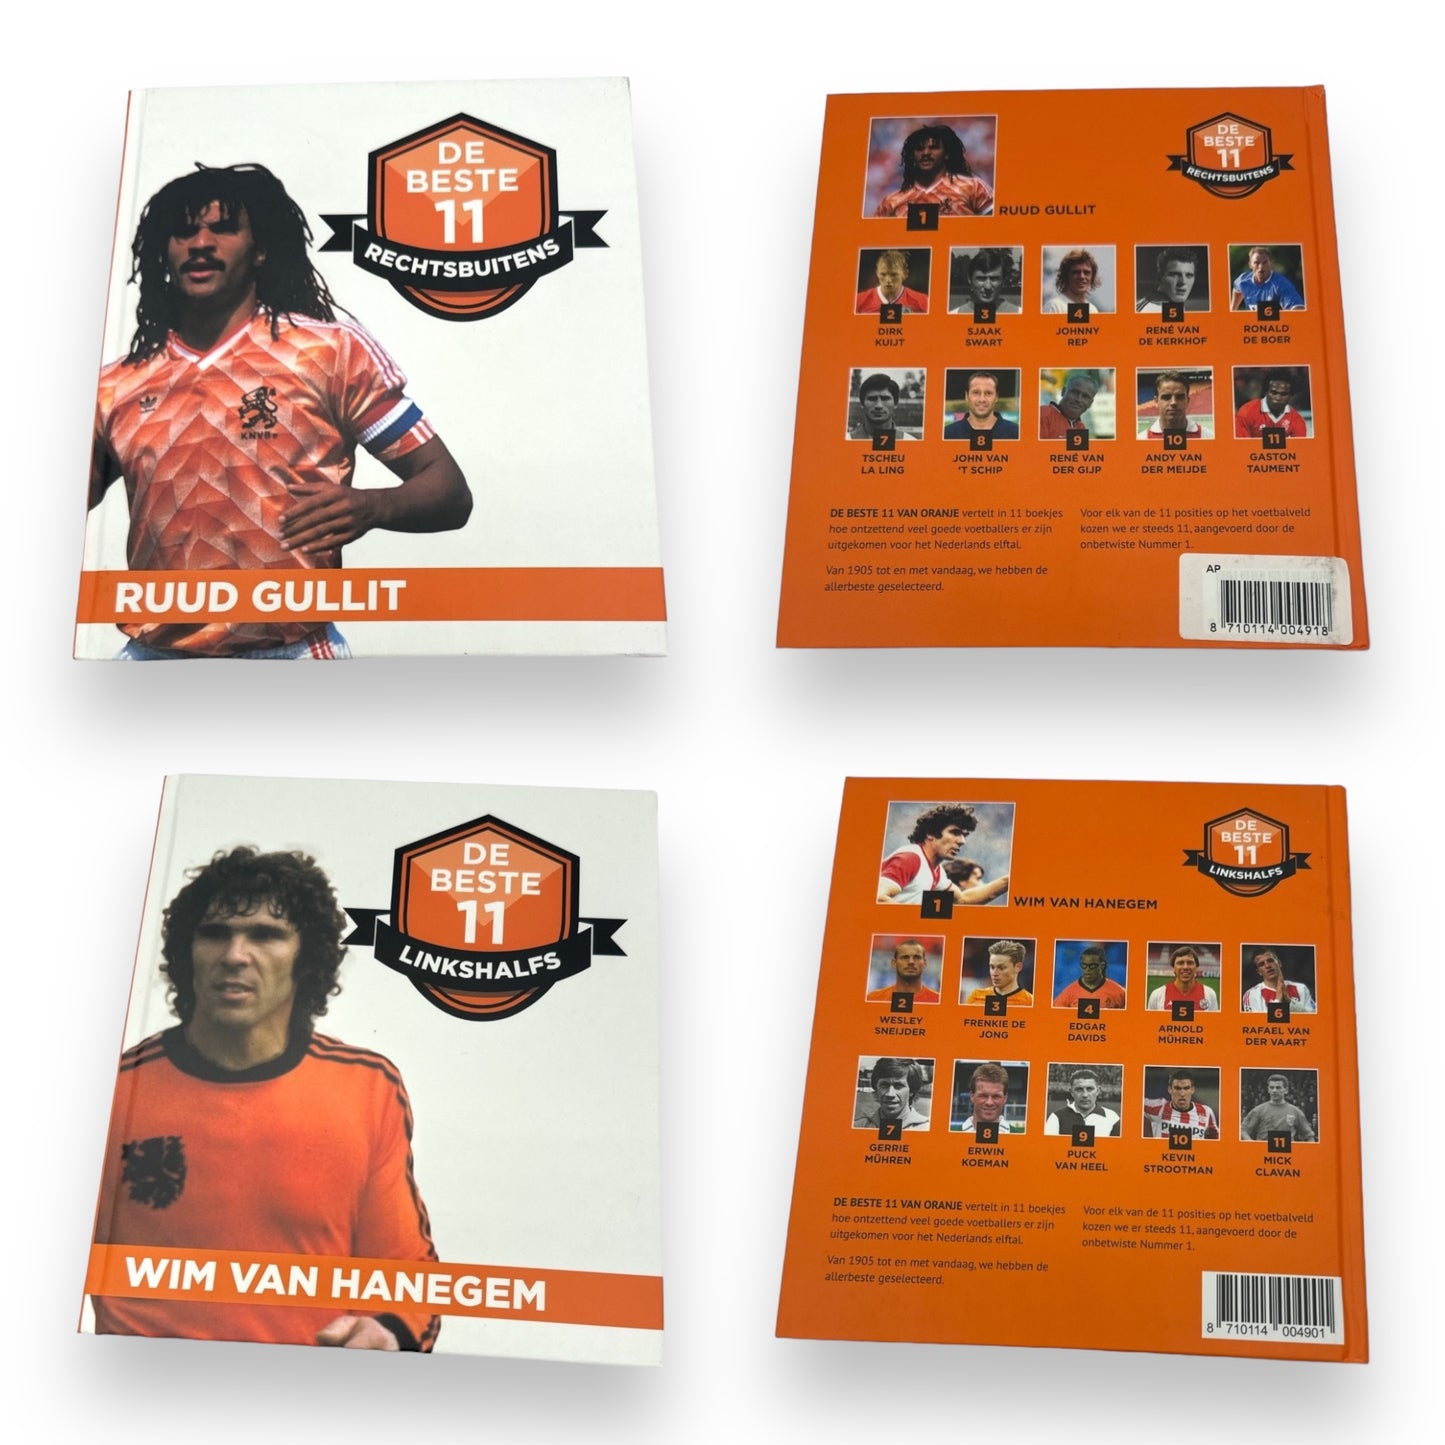 De Beste 11 Voetballers Collectie - De Ultieme Boekencollectie over het Legendarische Nederlands Elftal